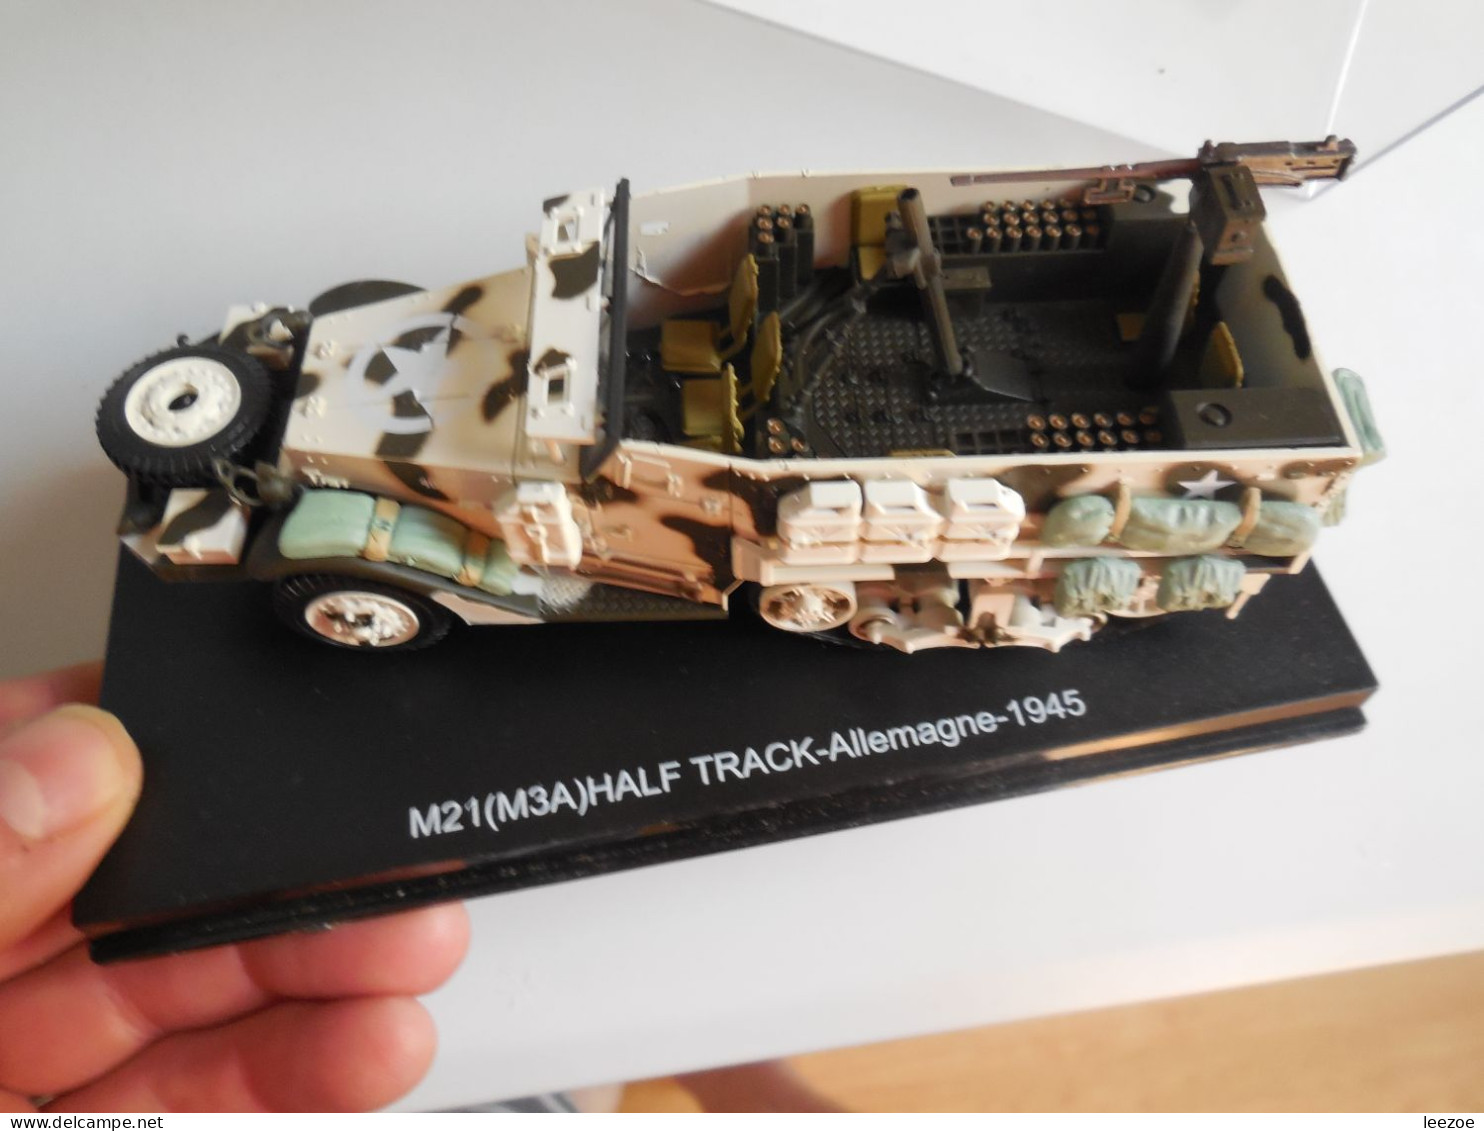 ATLAS Véhicules et blindés KFZ 305 et M21 (M3A) HALF TRACK série limitée 200/2000